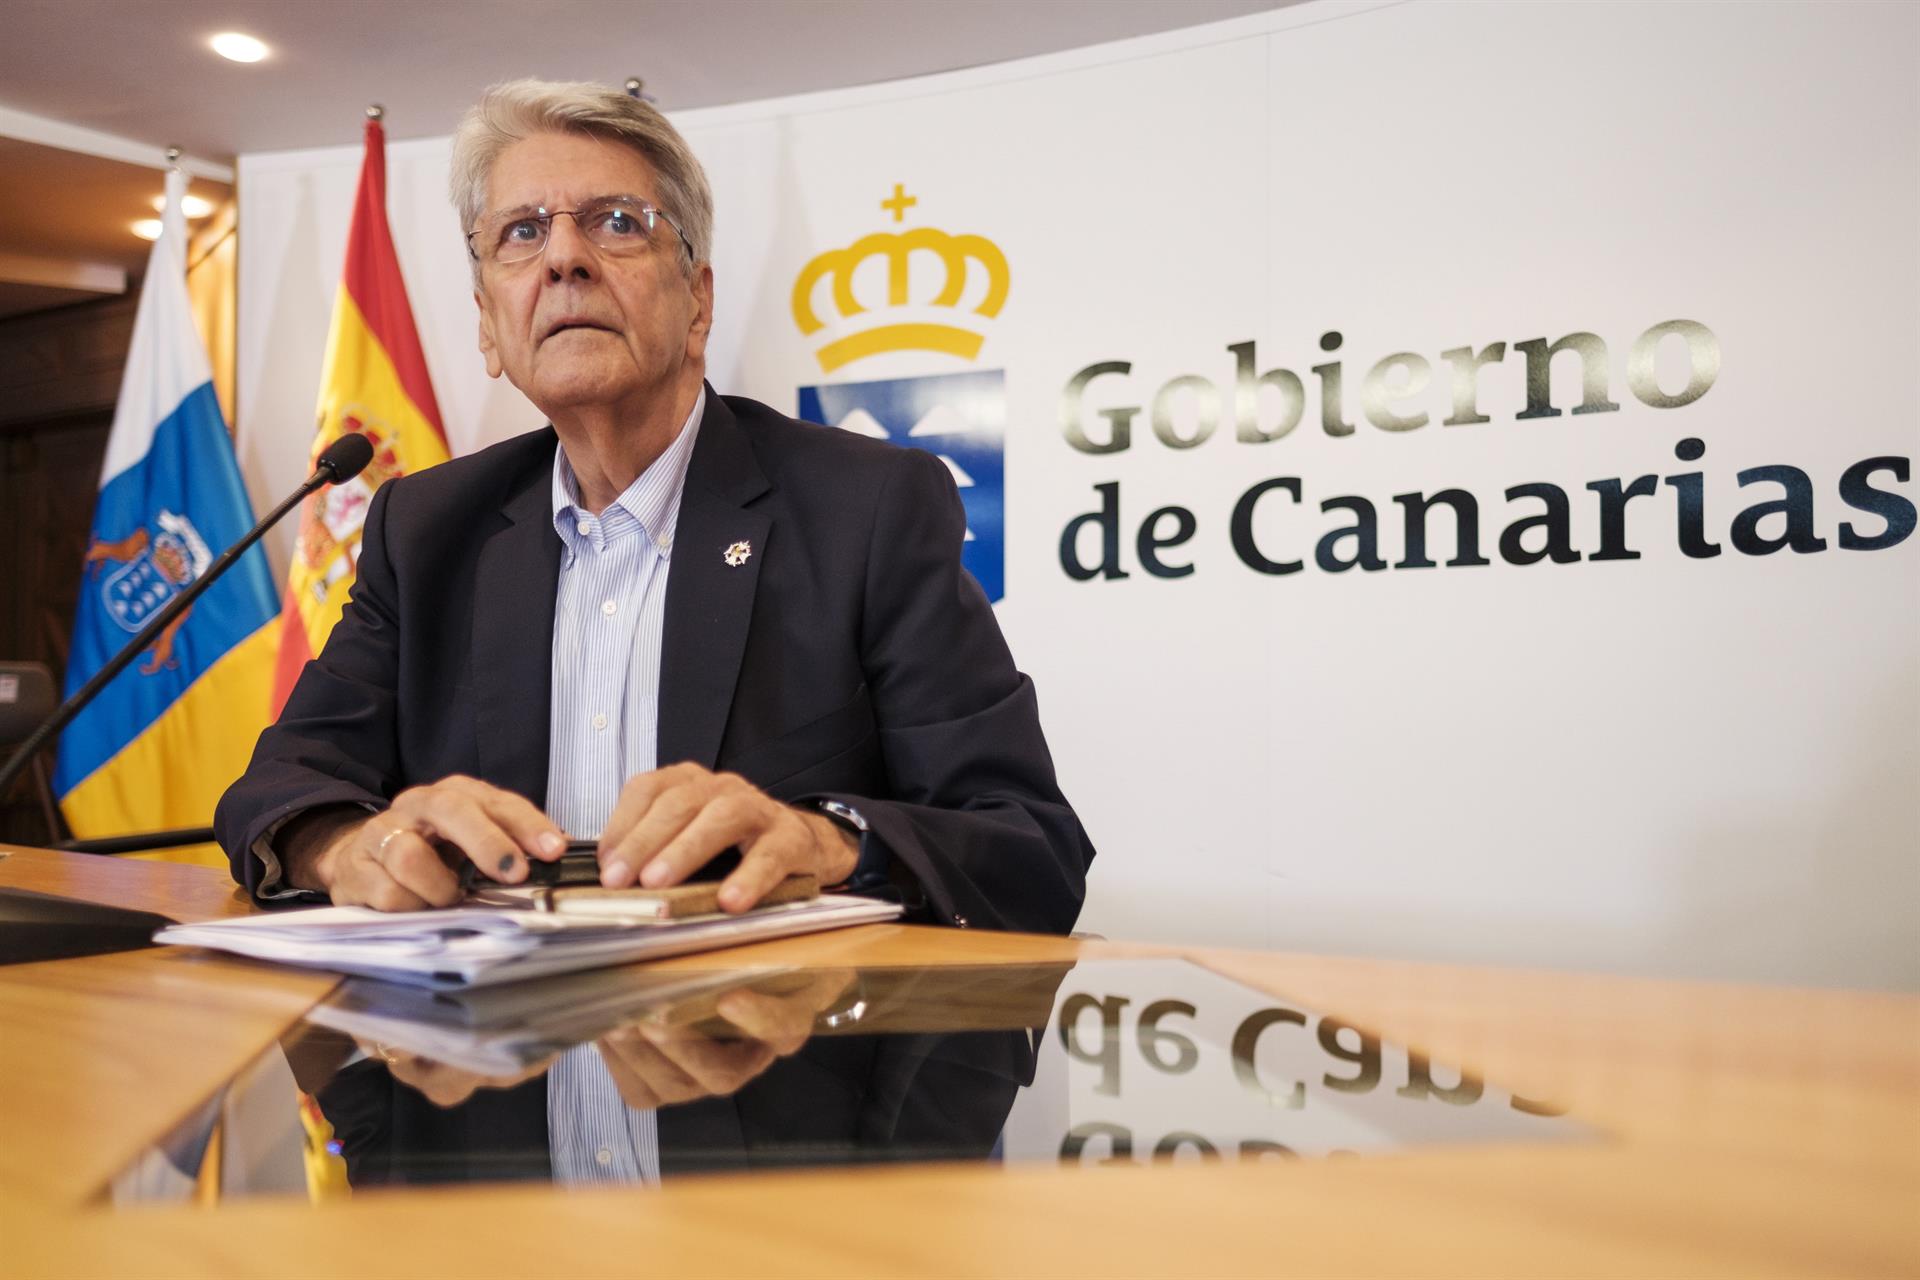 El consejero de Justicia del Gobierno de Canarias, Julio Pérez, informó sobre los acuerdos tomados en el Consejo de Gobierno celebrado este jueves en Las Palmas de Gran Canaria. EFE/Ángel Medina G.